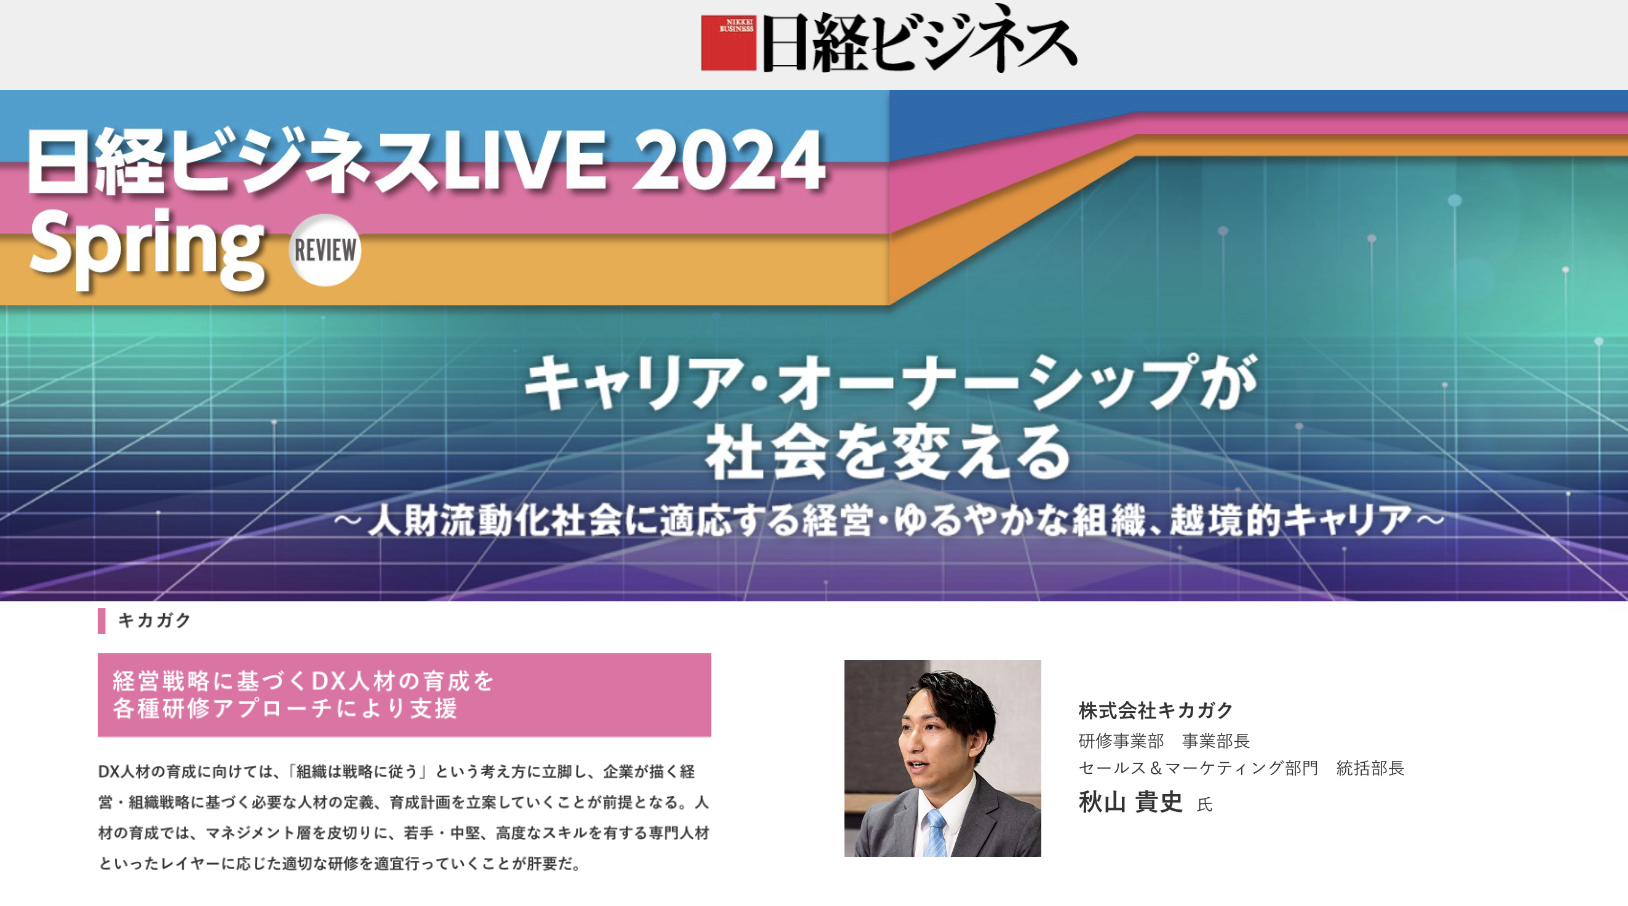 【メディア掲載】日経ビジネス電子版に当社の秋山が登壇した「日経ビジネスLIVE 2024 Spring」の講演記事が掲載されました。